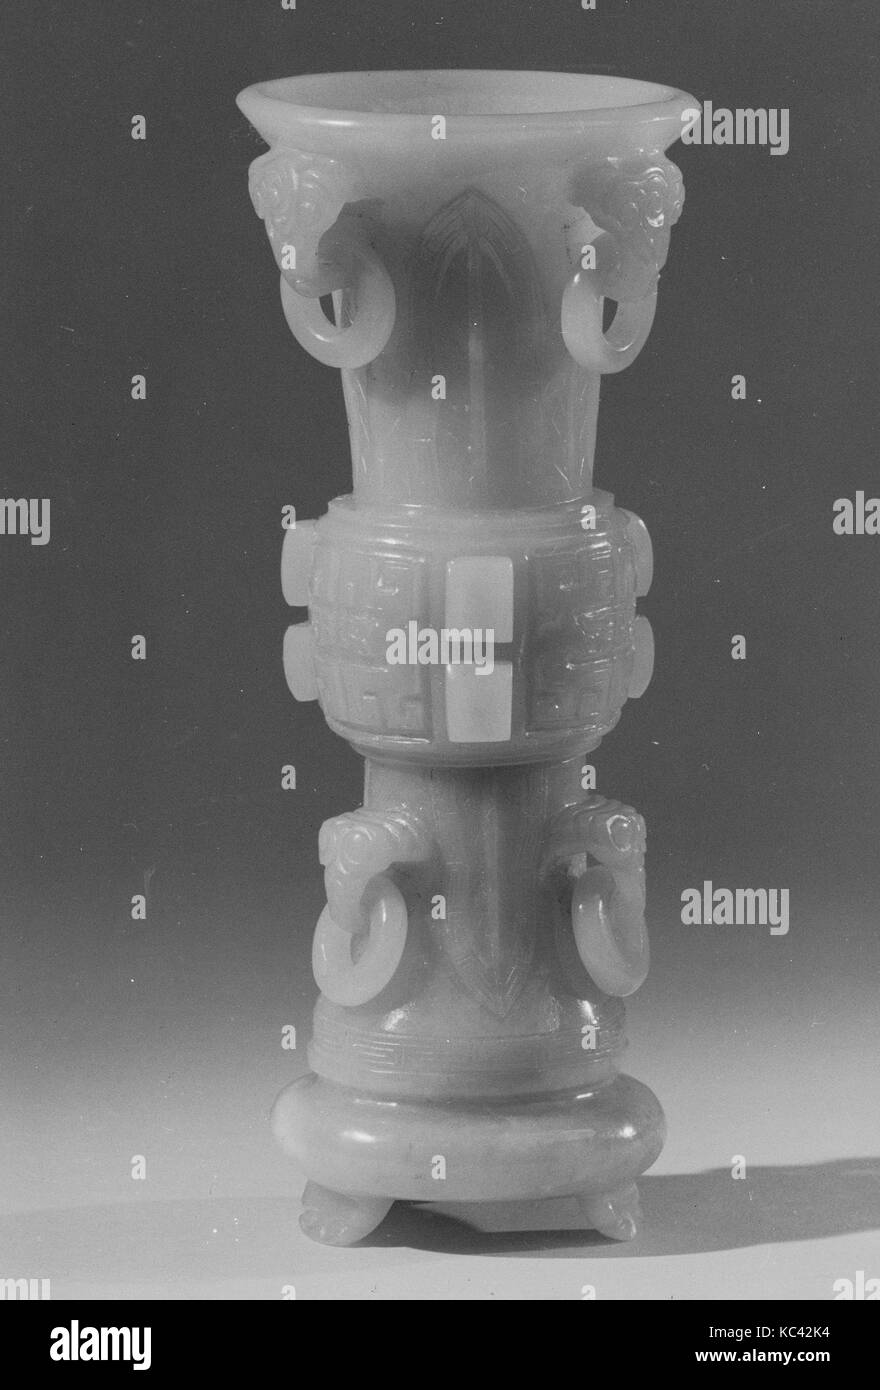 Vase, 19th century, China, Jade, H. 5 3/4 in. (14.6 cm); Diam. 2 1/4 in. (5.7 cm), Jade Stock Photo